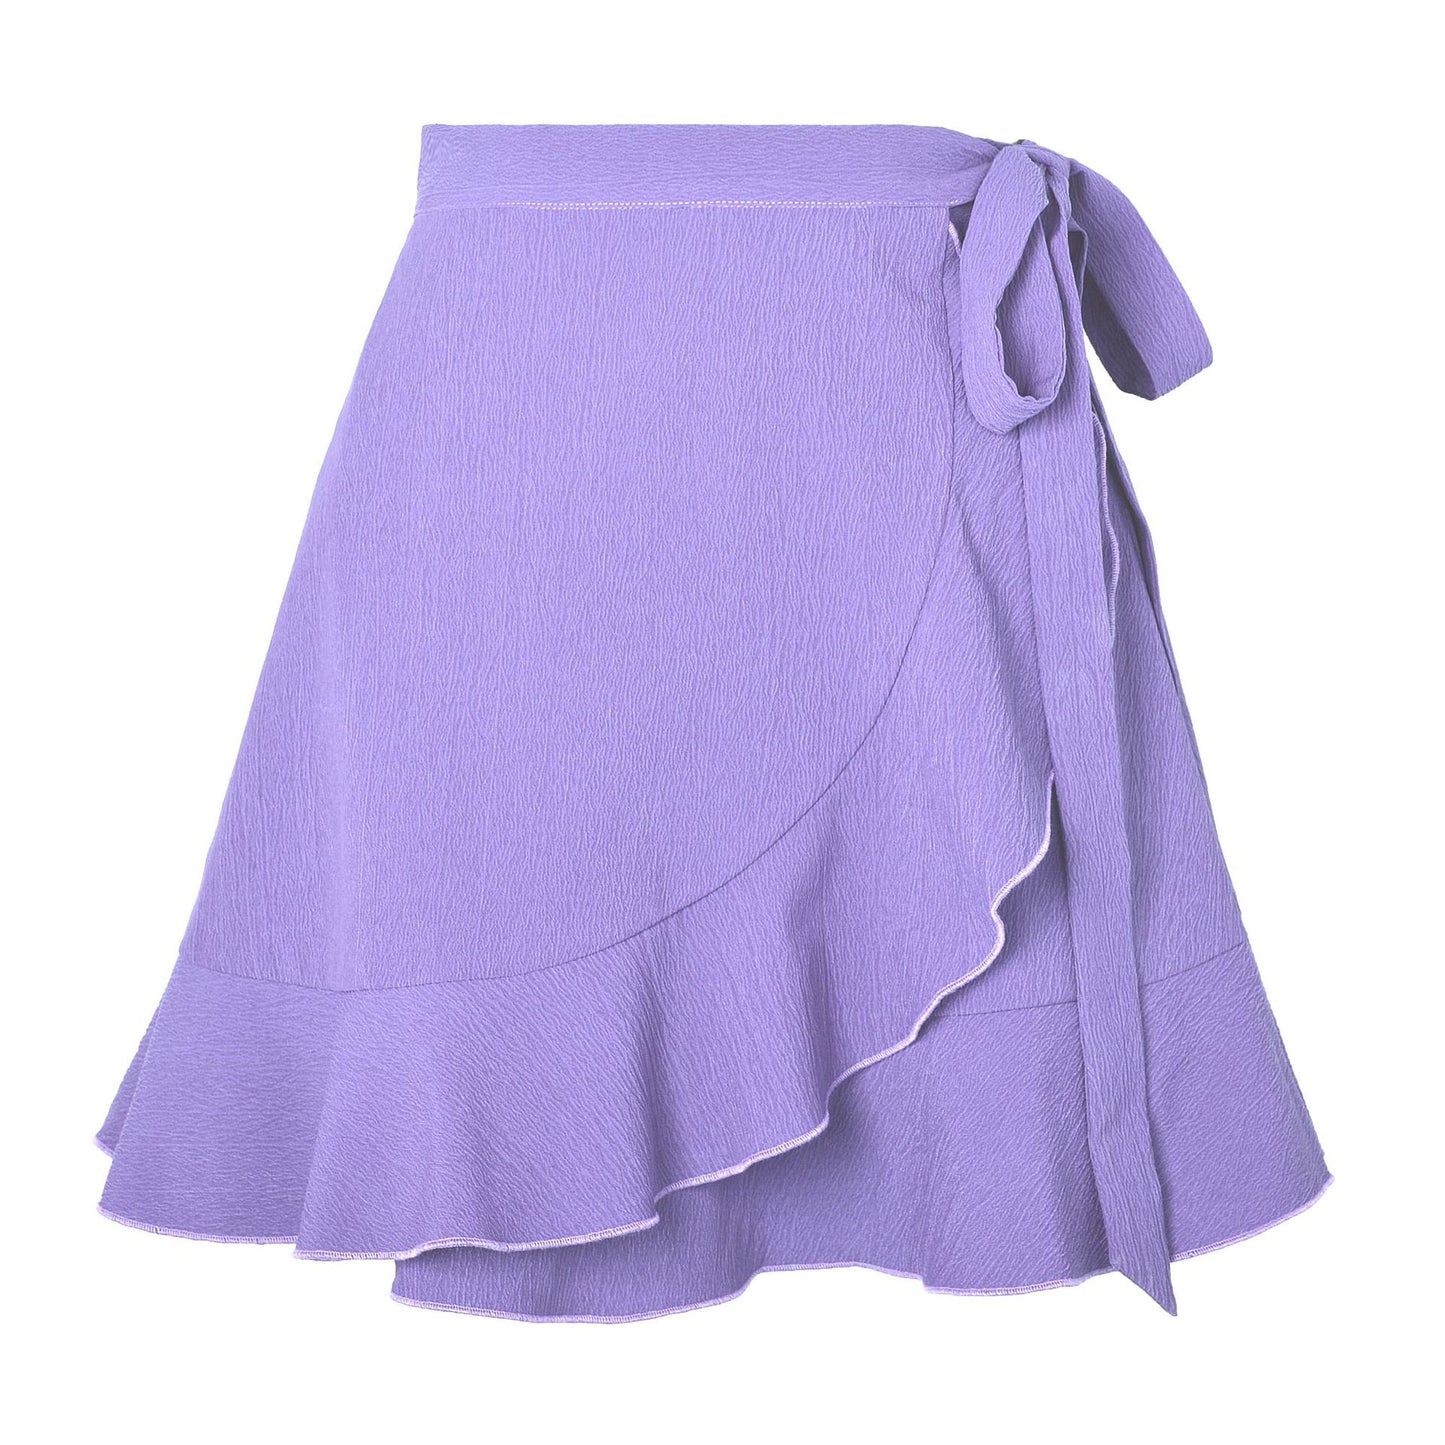 One Piece Lace Up High Waist Skirt